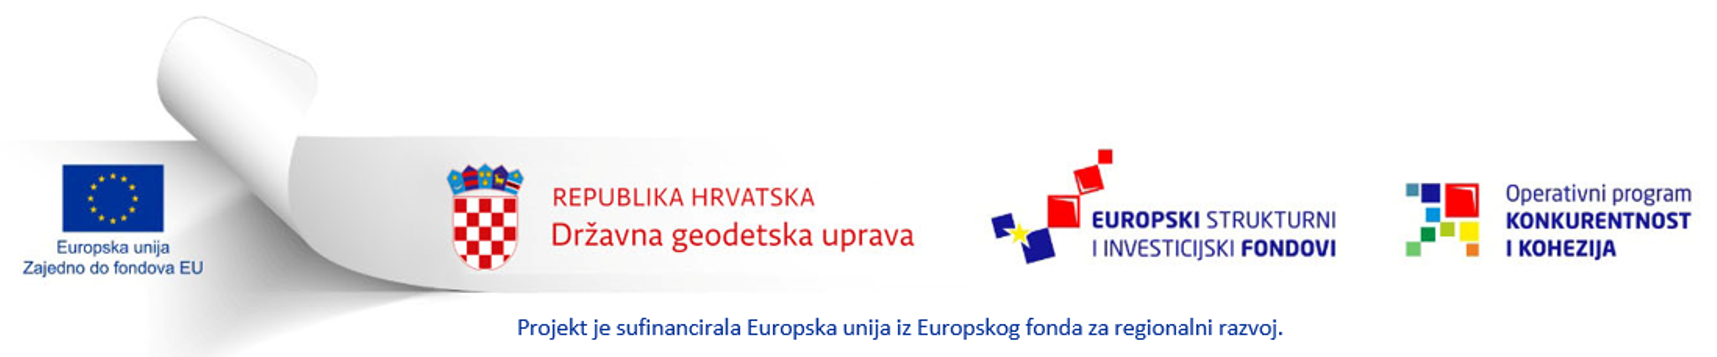 Lenta Europske unije, Republike Hrvatske - Državne geodetske uprave, Europskih strukturnih i investicijskih fondova te Operativnog programa Konkurentnost i kohezija.